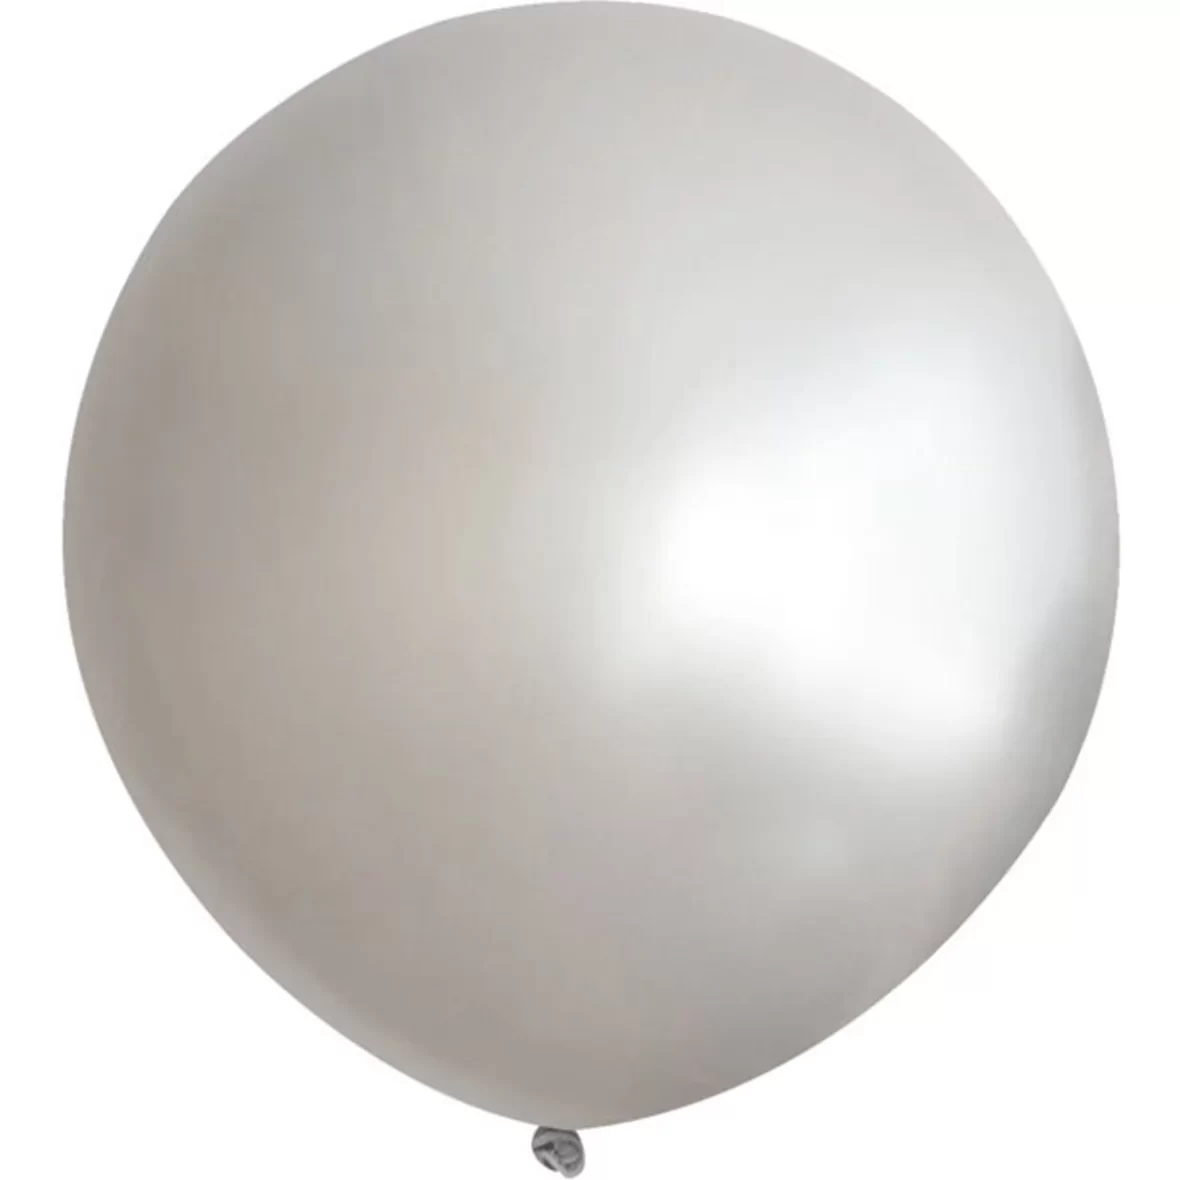 981-baloane-jumbo-ovale-90-cm-5